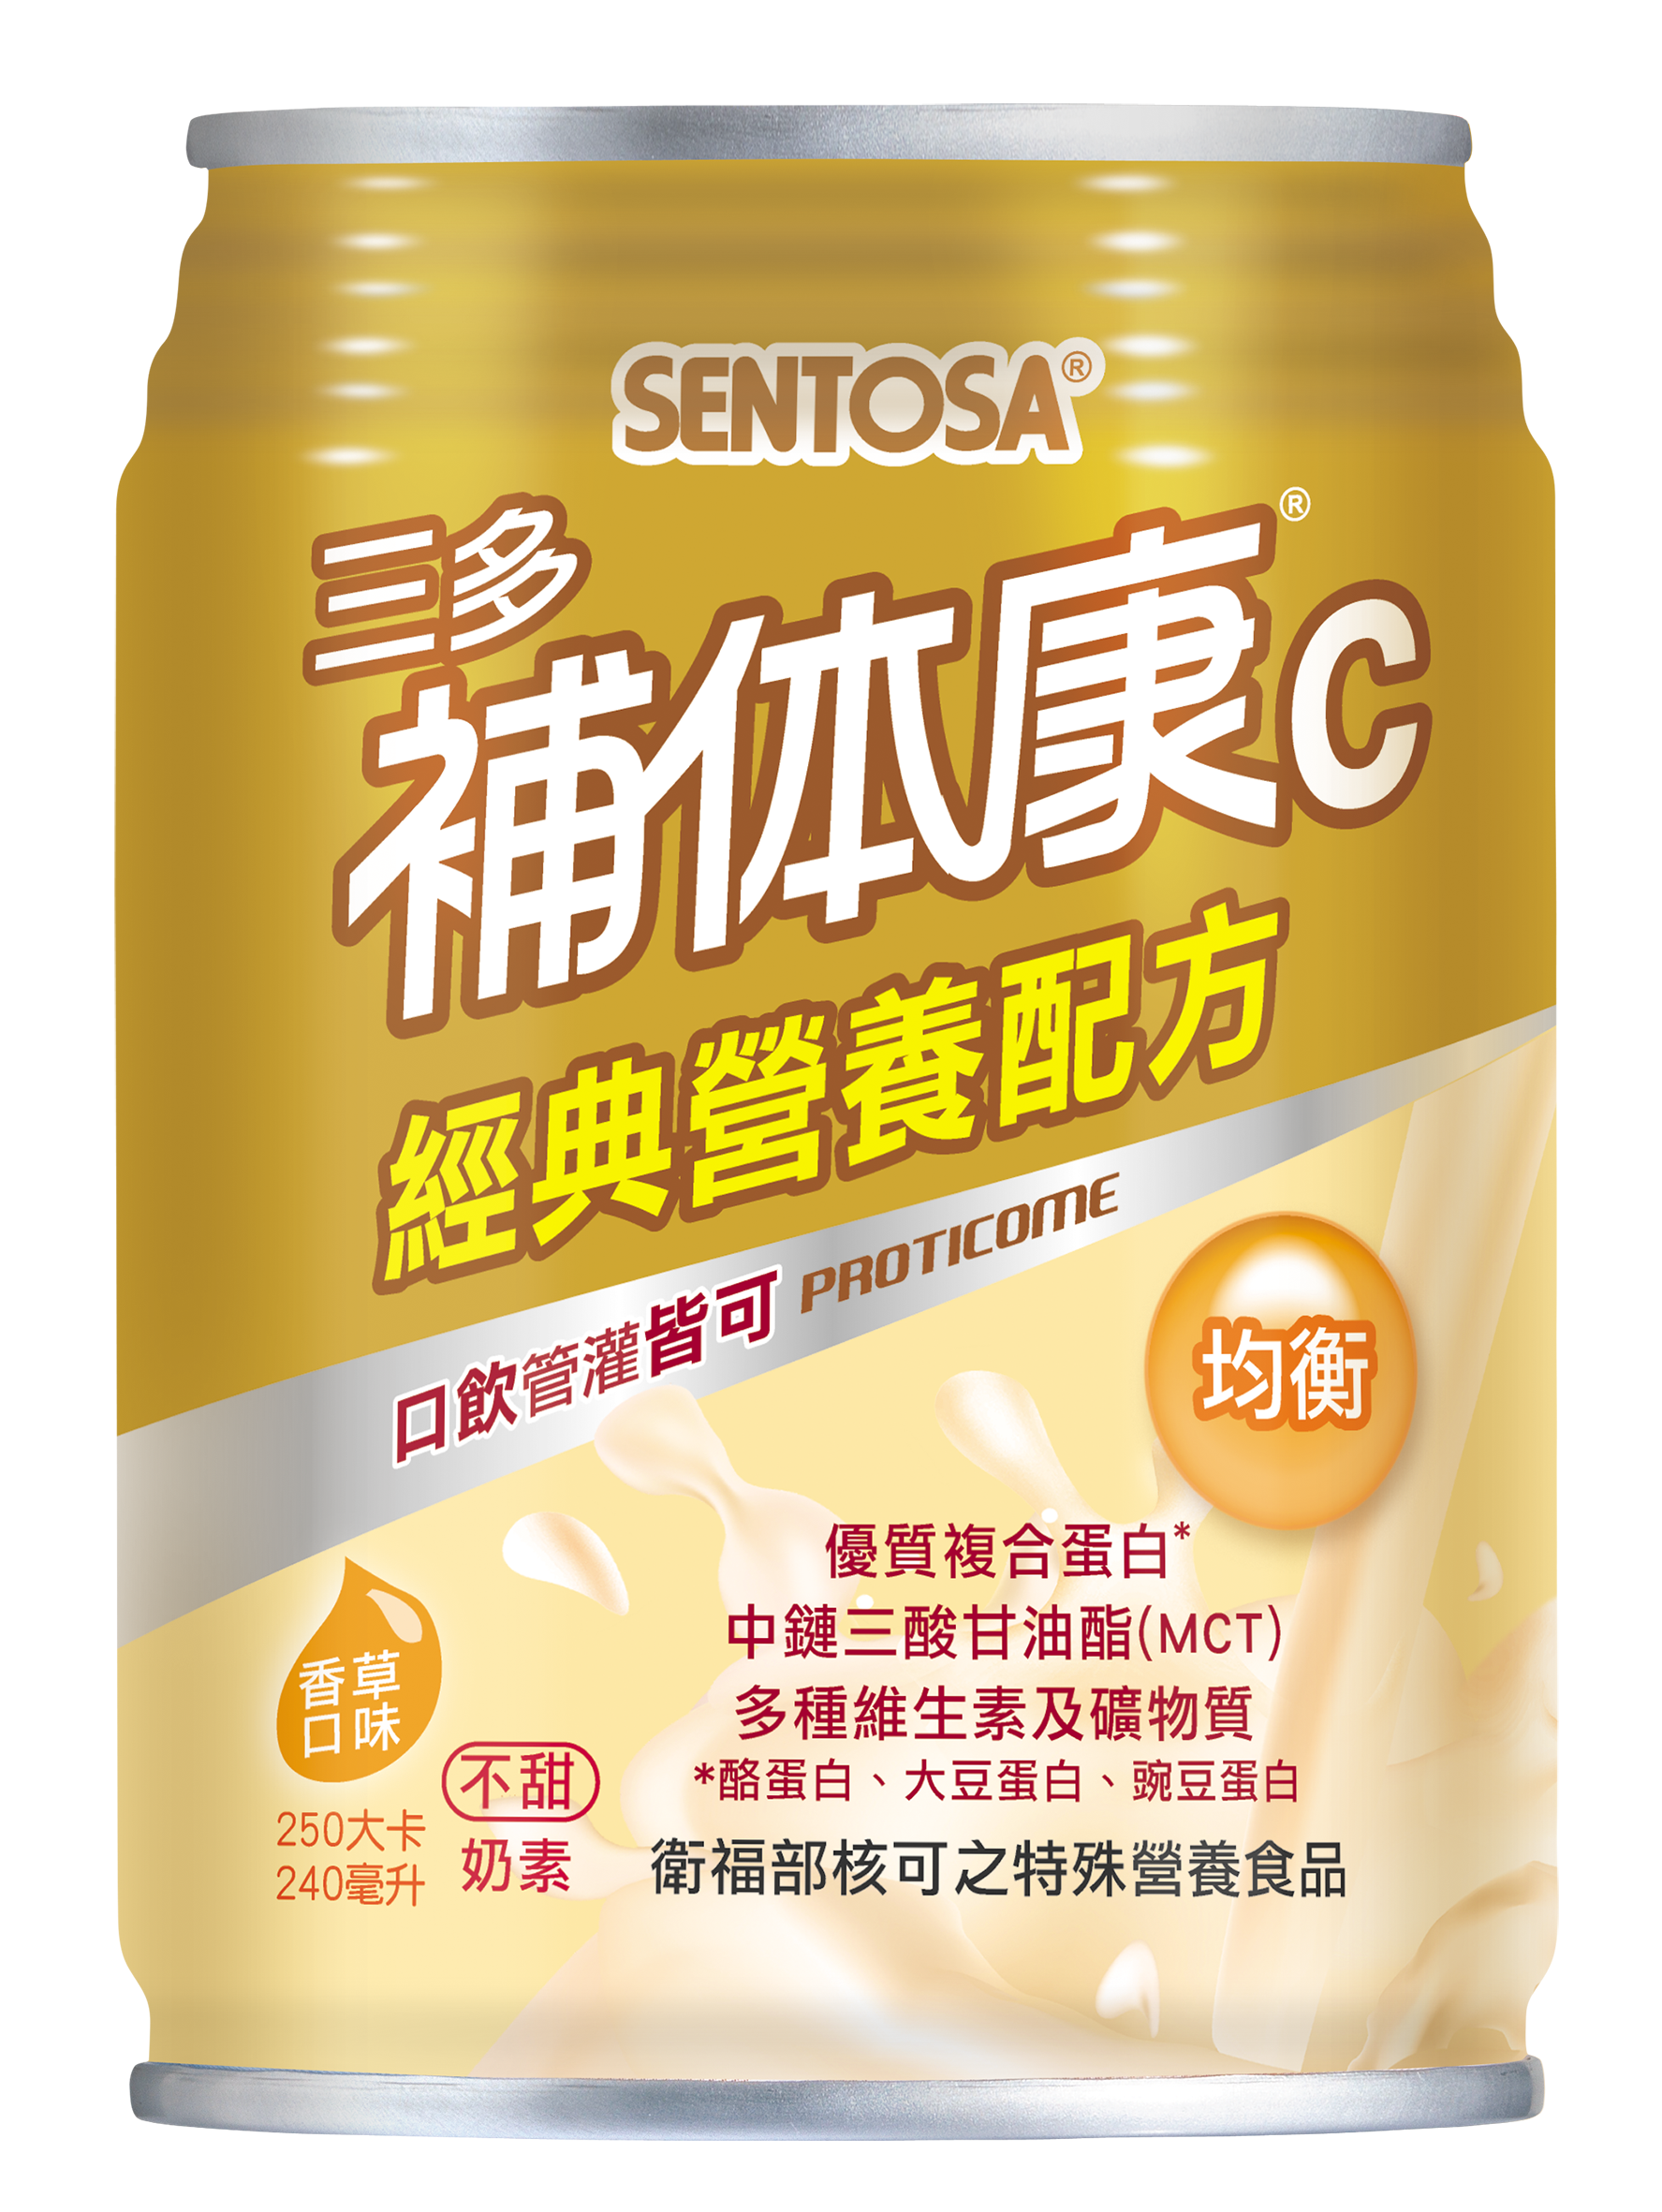 三多 SENTOSA 補體康C經典營養配方 240ml 24罐/箱